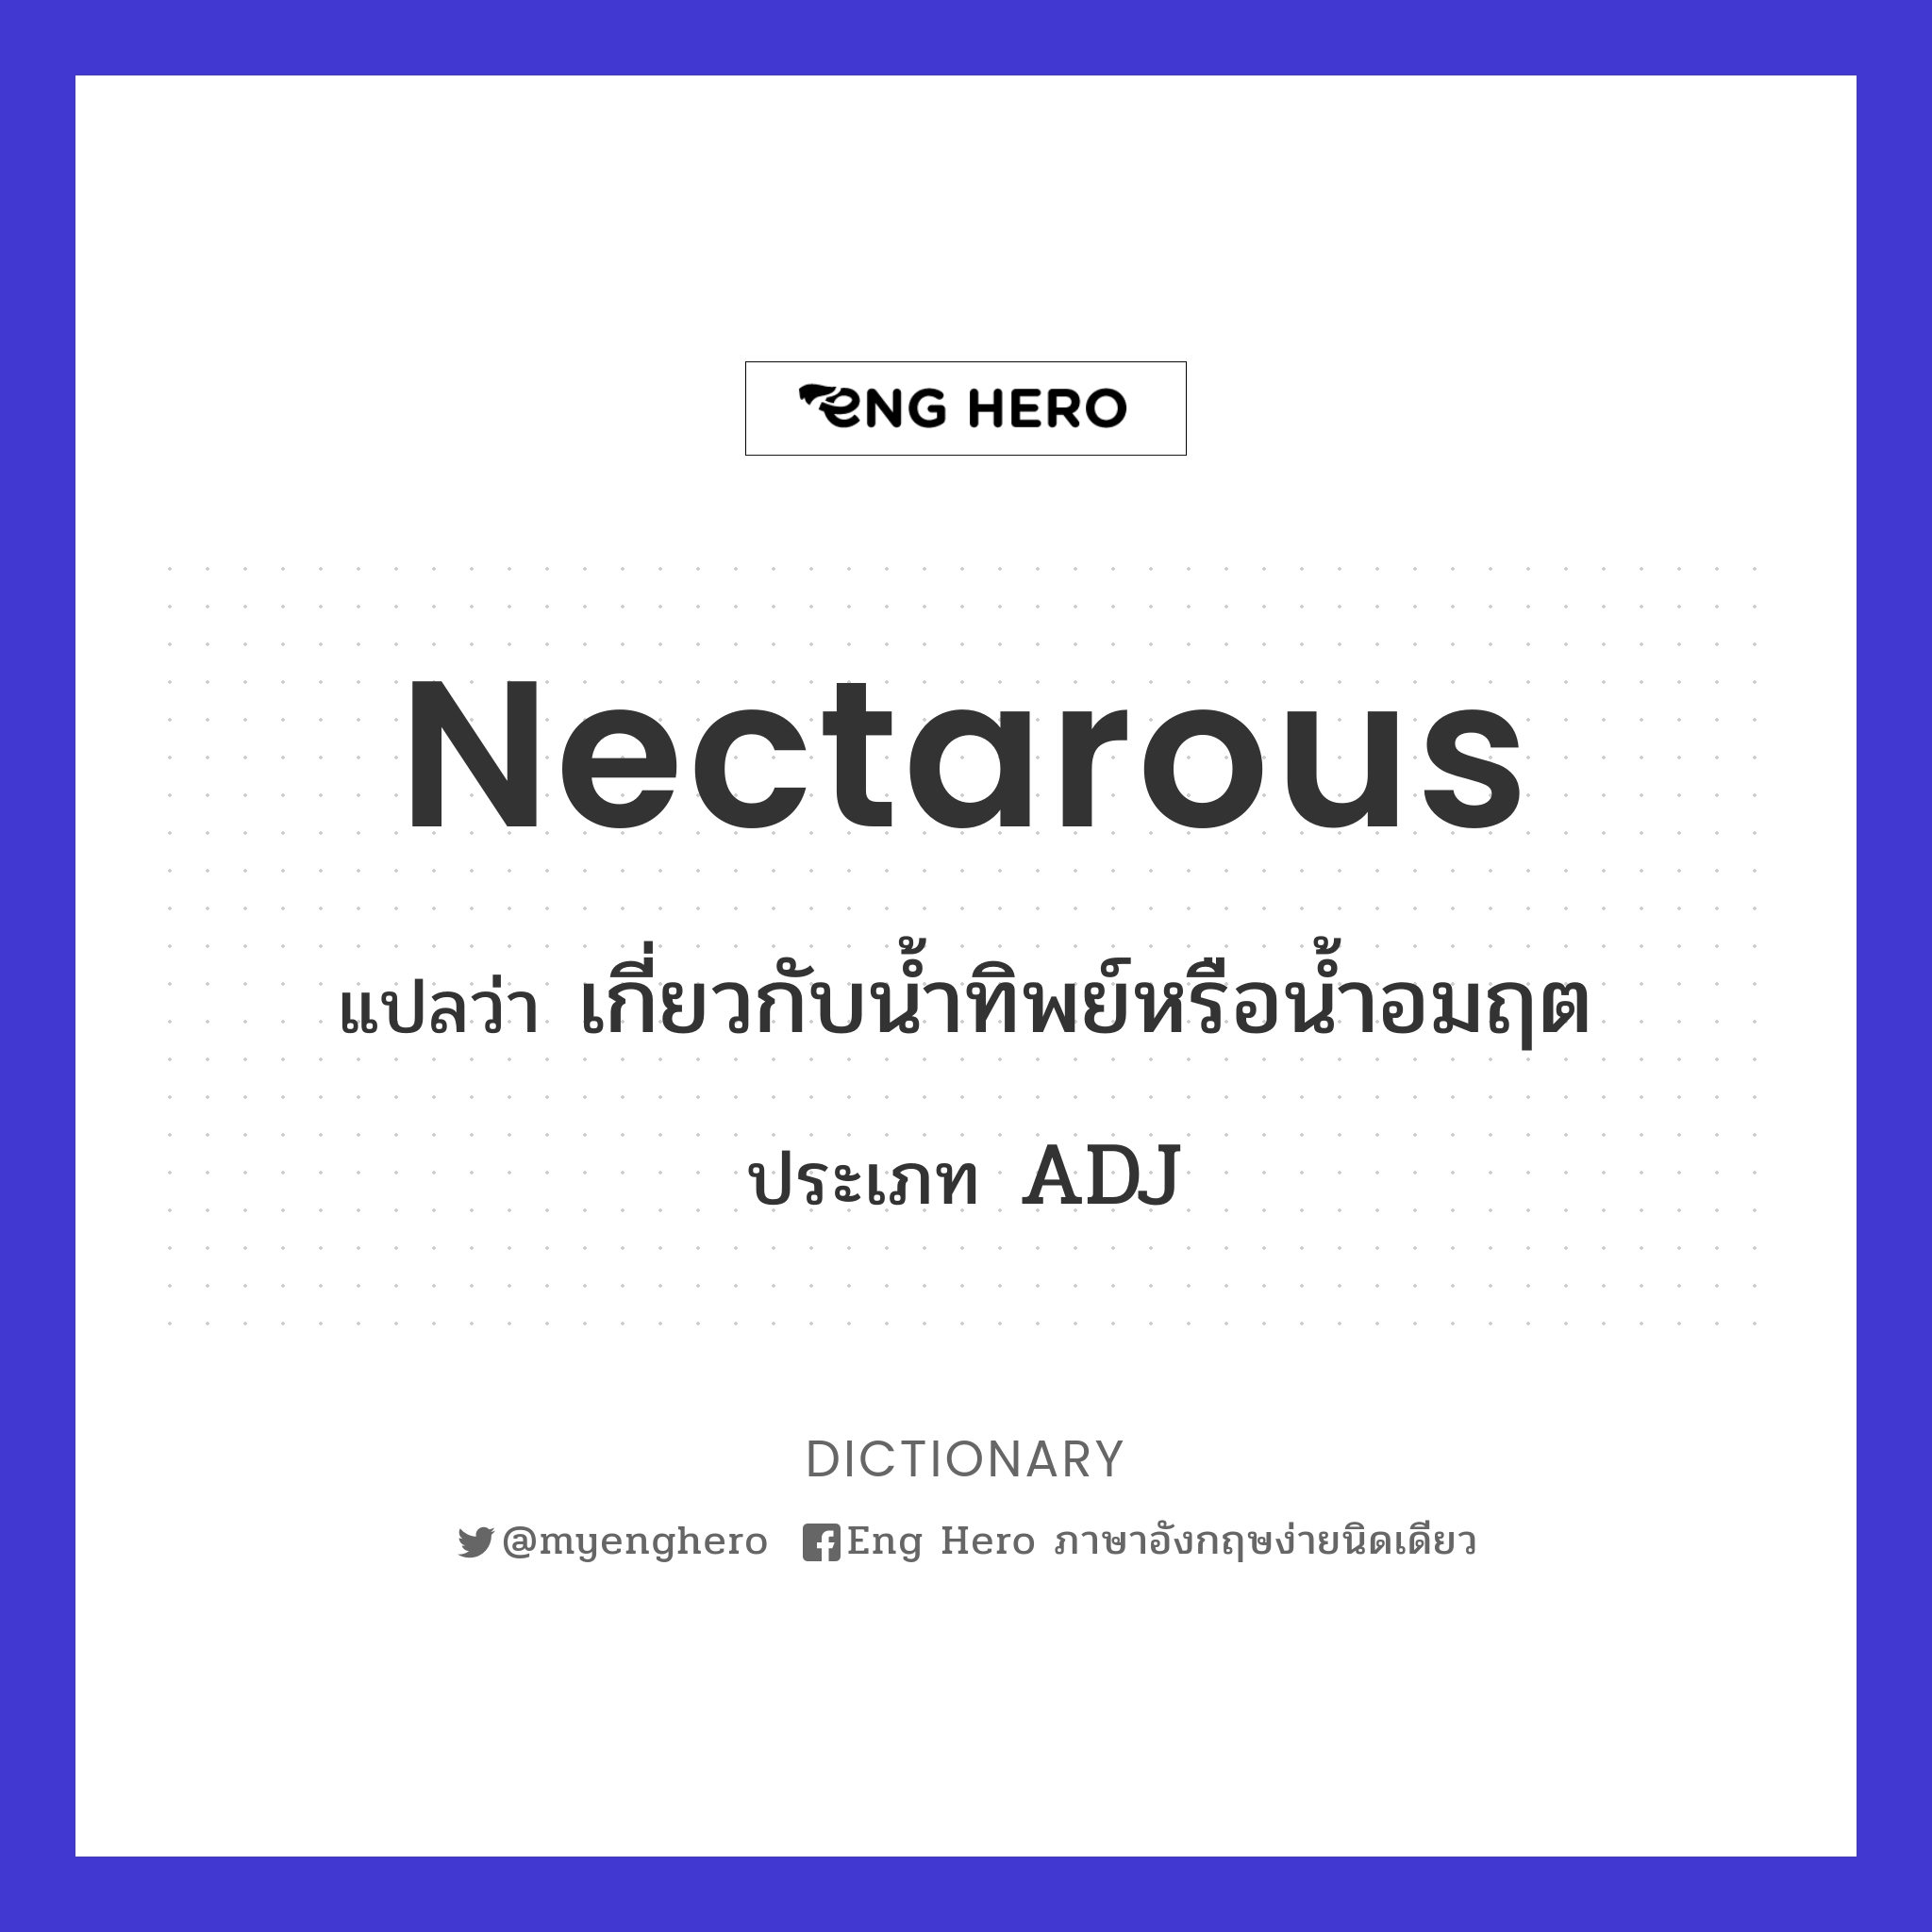 nectarous